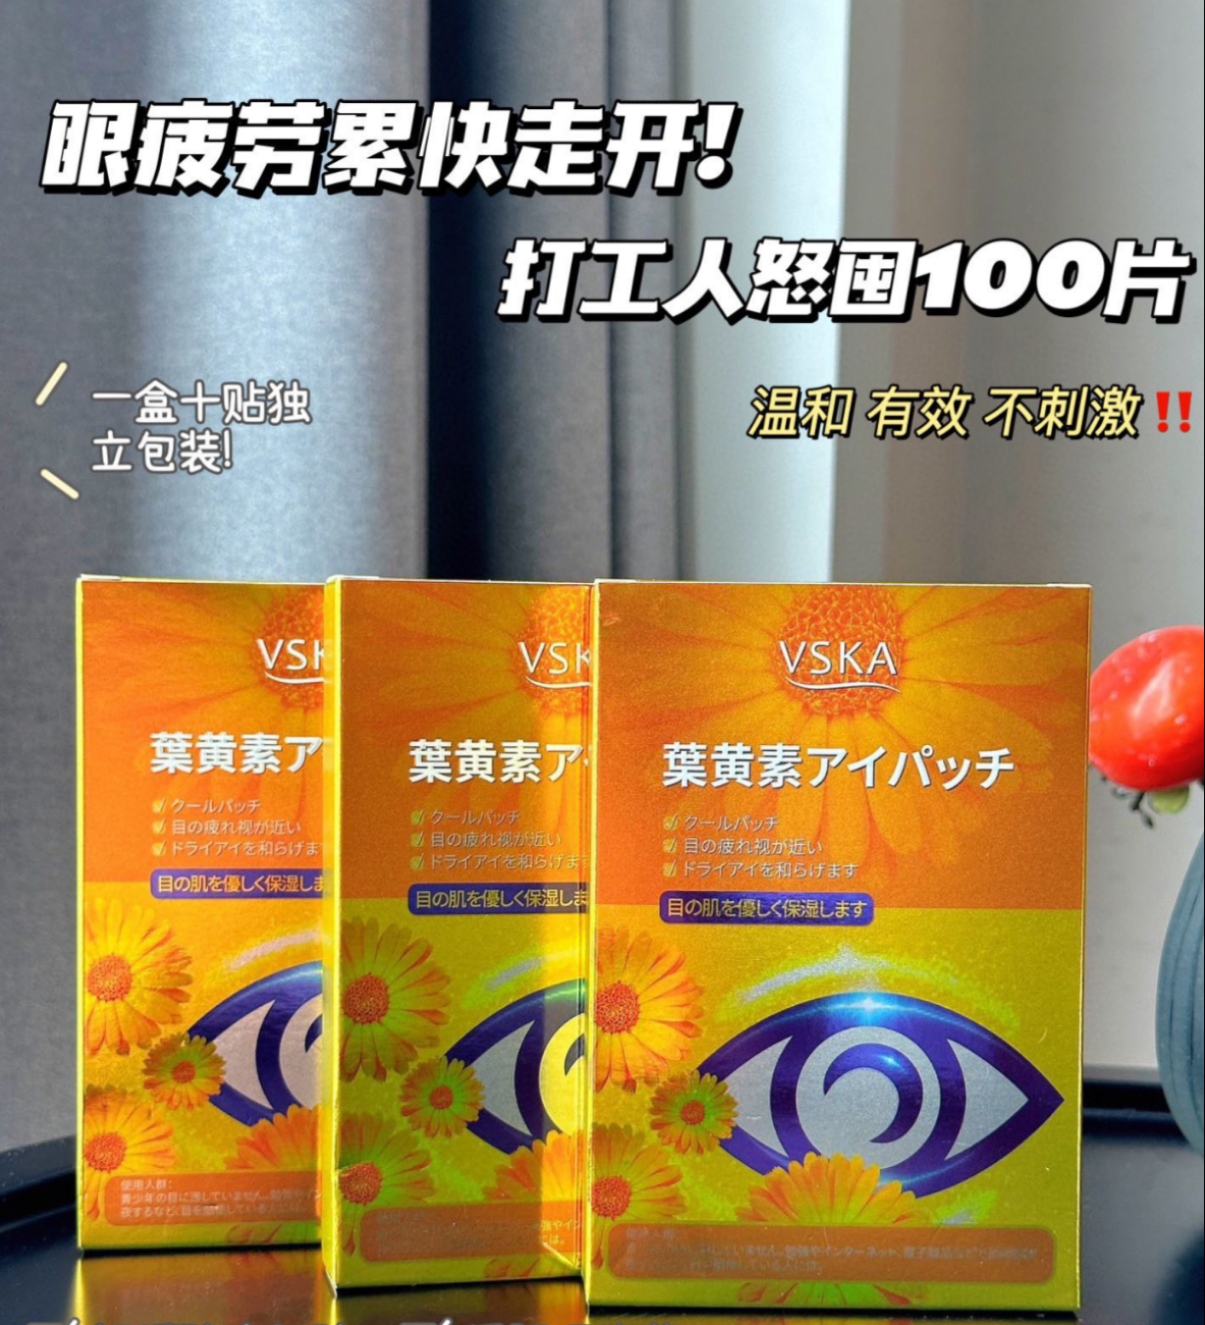 现货5盒送1盒！VSKA叶黄素眼贴眼膜一盒10对缓解眼部疲劳红血丝